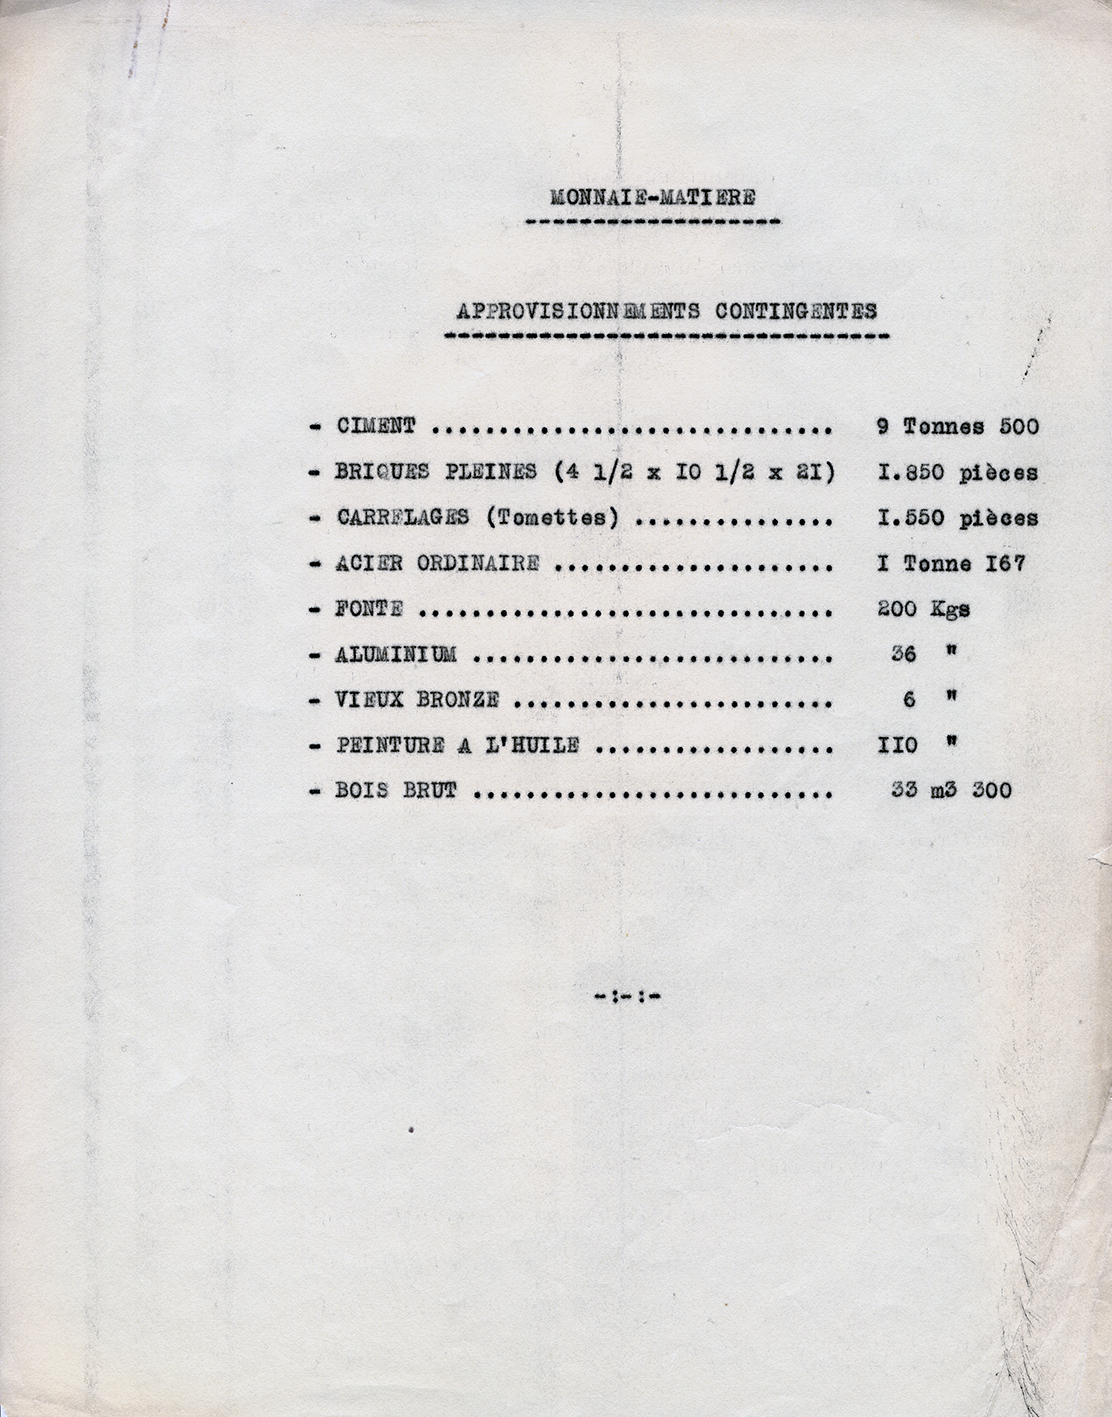 « Bureau central de constructions, la maison familiale équipée B.C.C. ». Devis descriptif, 11 mars 1942.